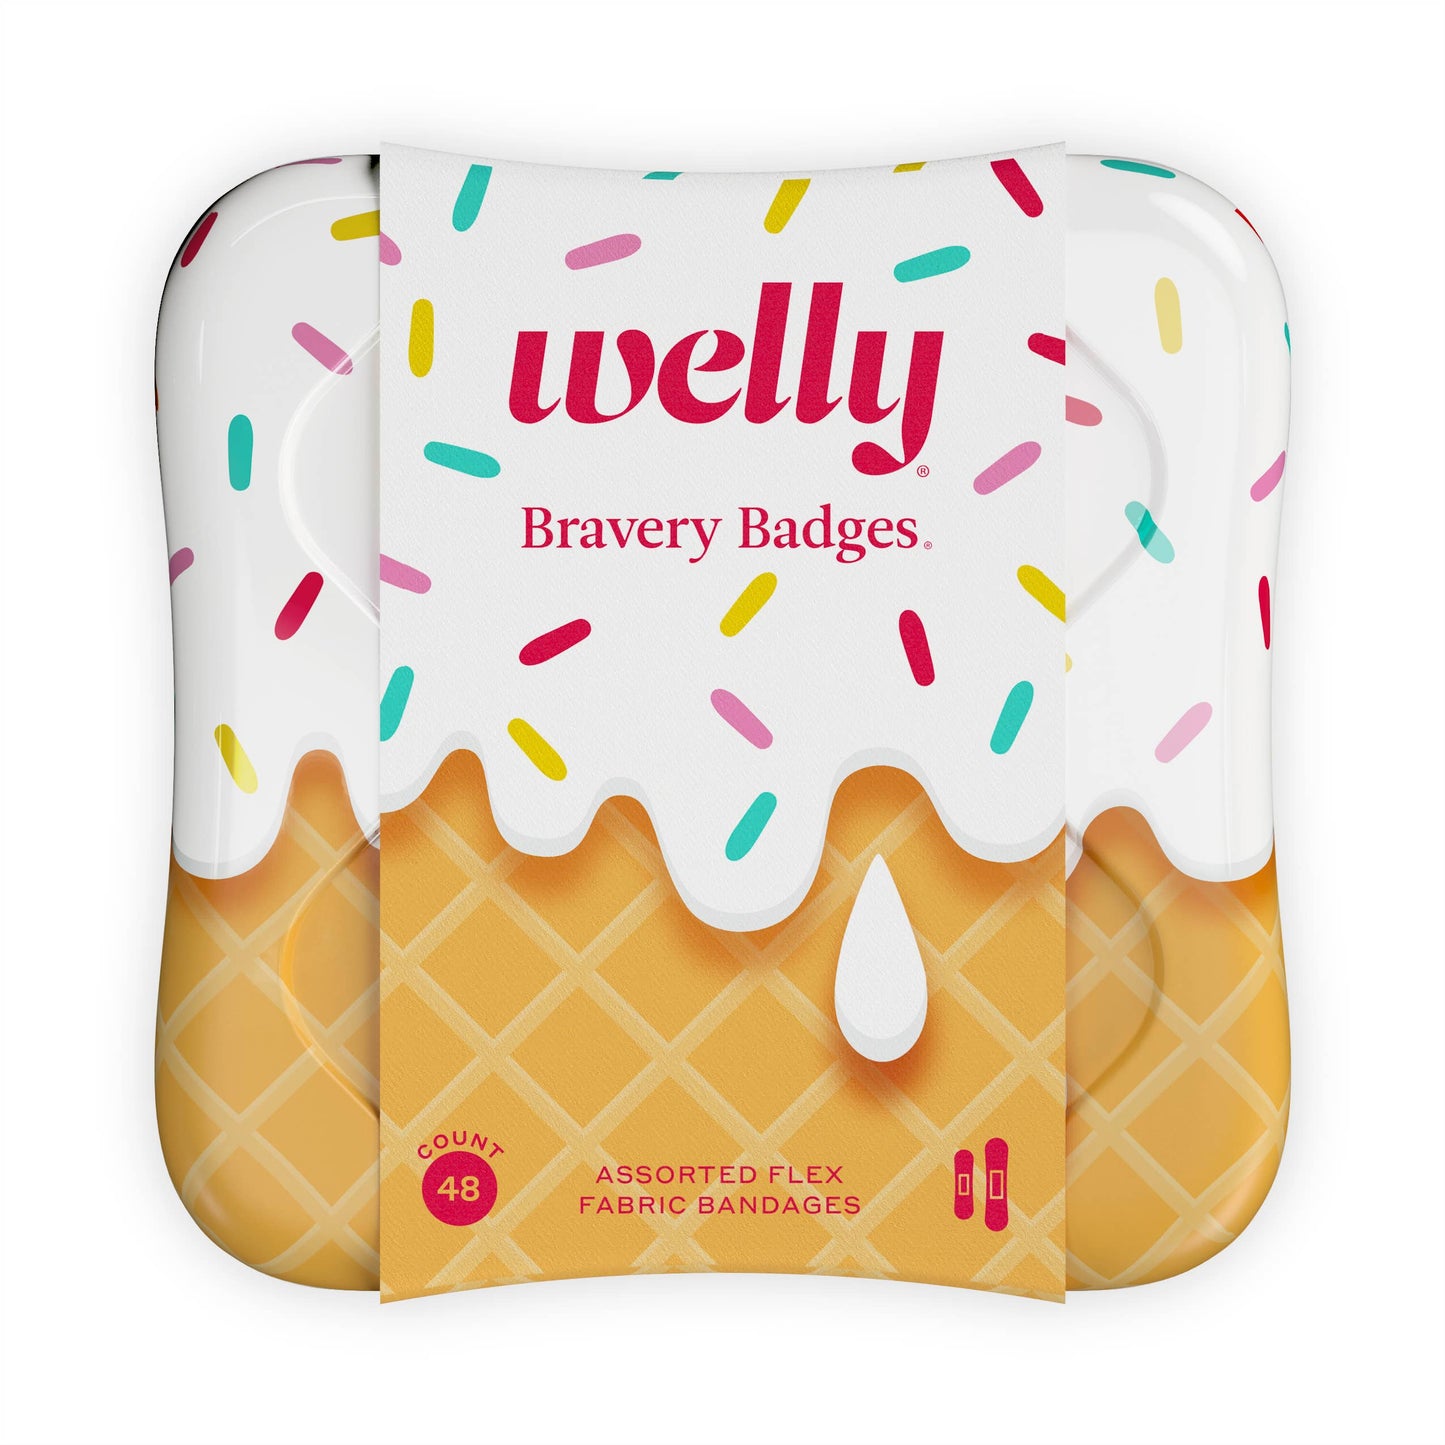 Welly - Bravery Badges Ice Cream